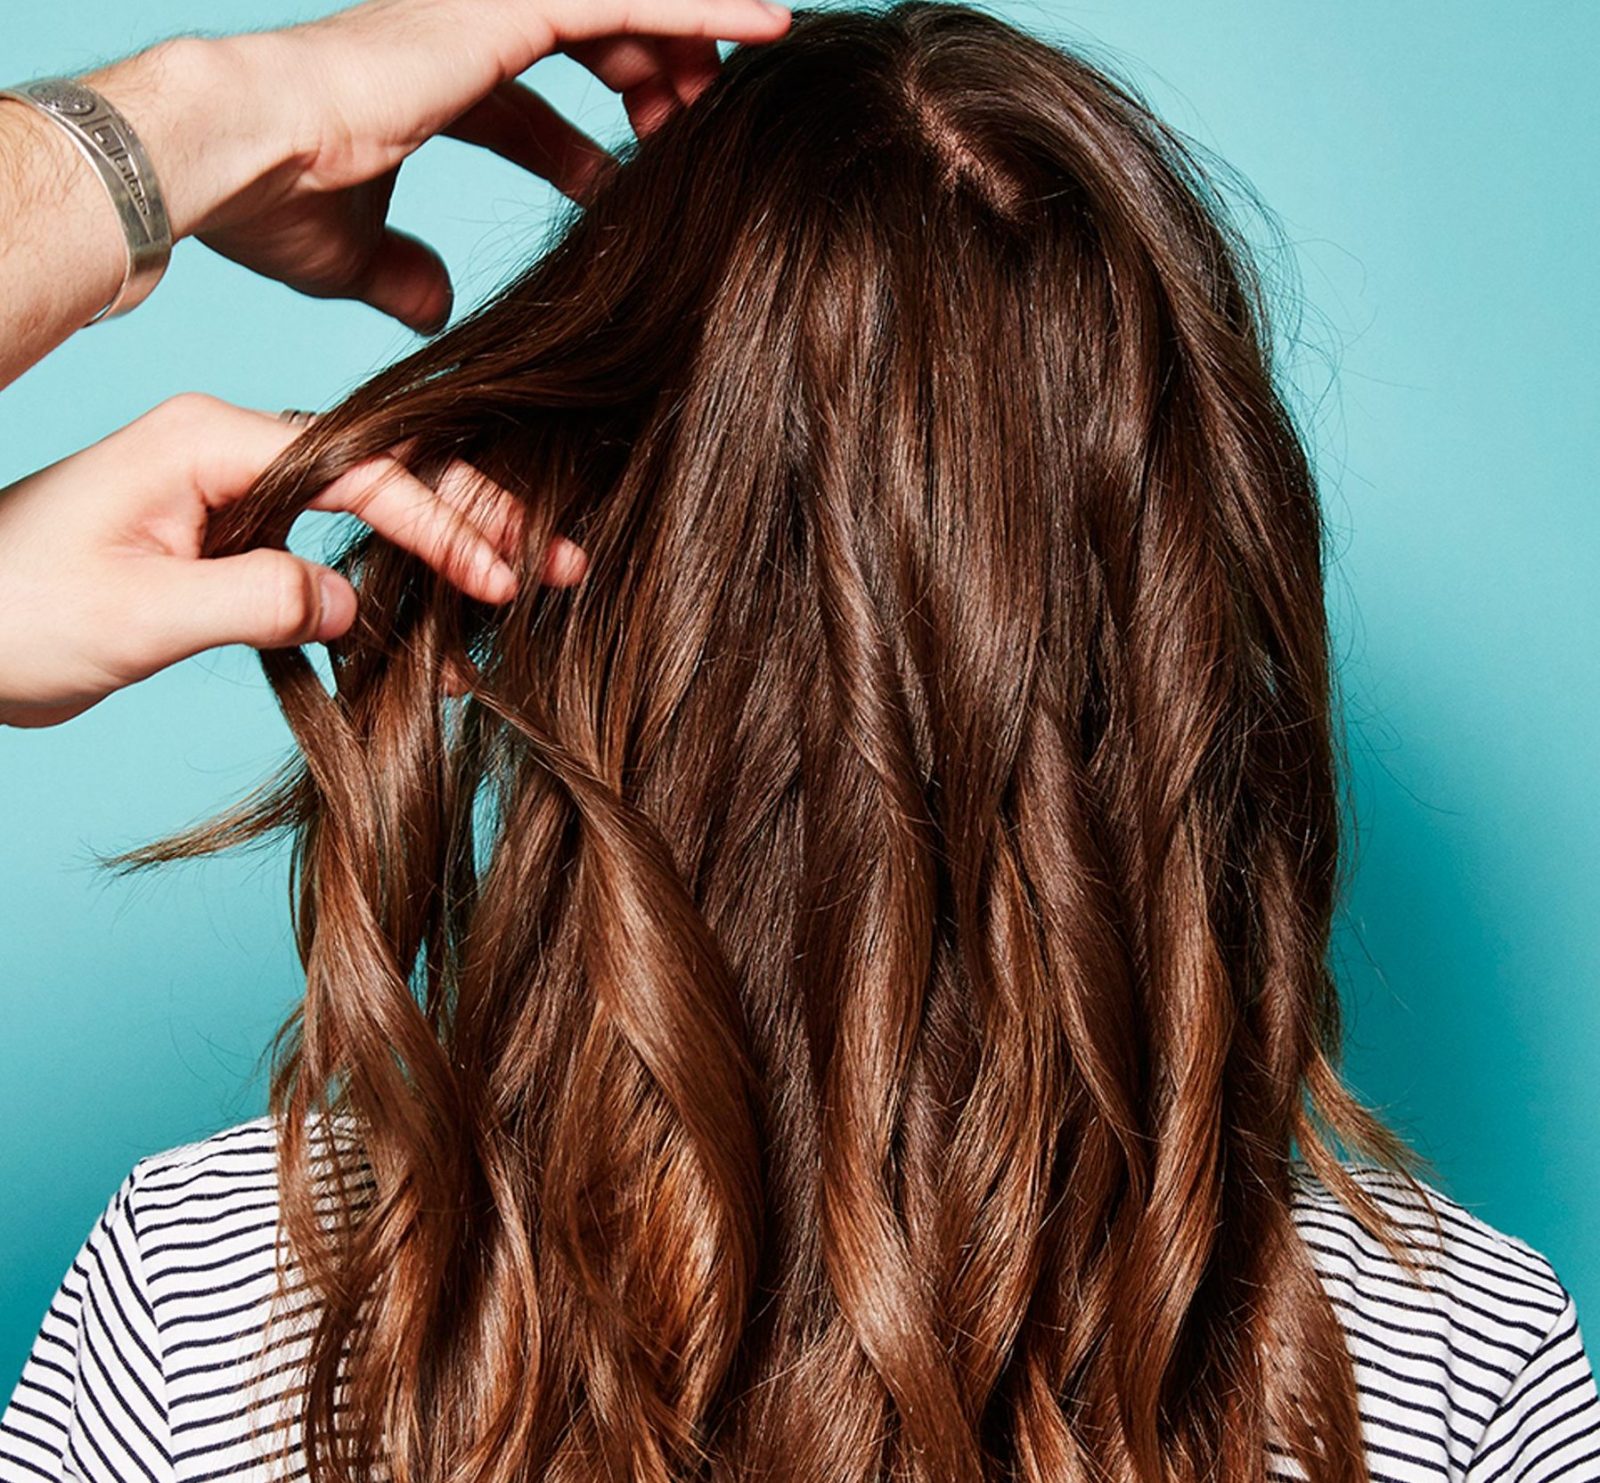  Nếu bạn đang sở hữu mái tóc duỗi hoặc uốn trước khi sấy tóc bạn nên xịt một ít dầu dừa vào tóc để tóc không bị khô - Ảnh minh họa: Internet